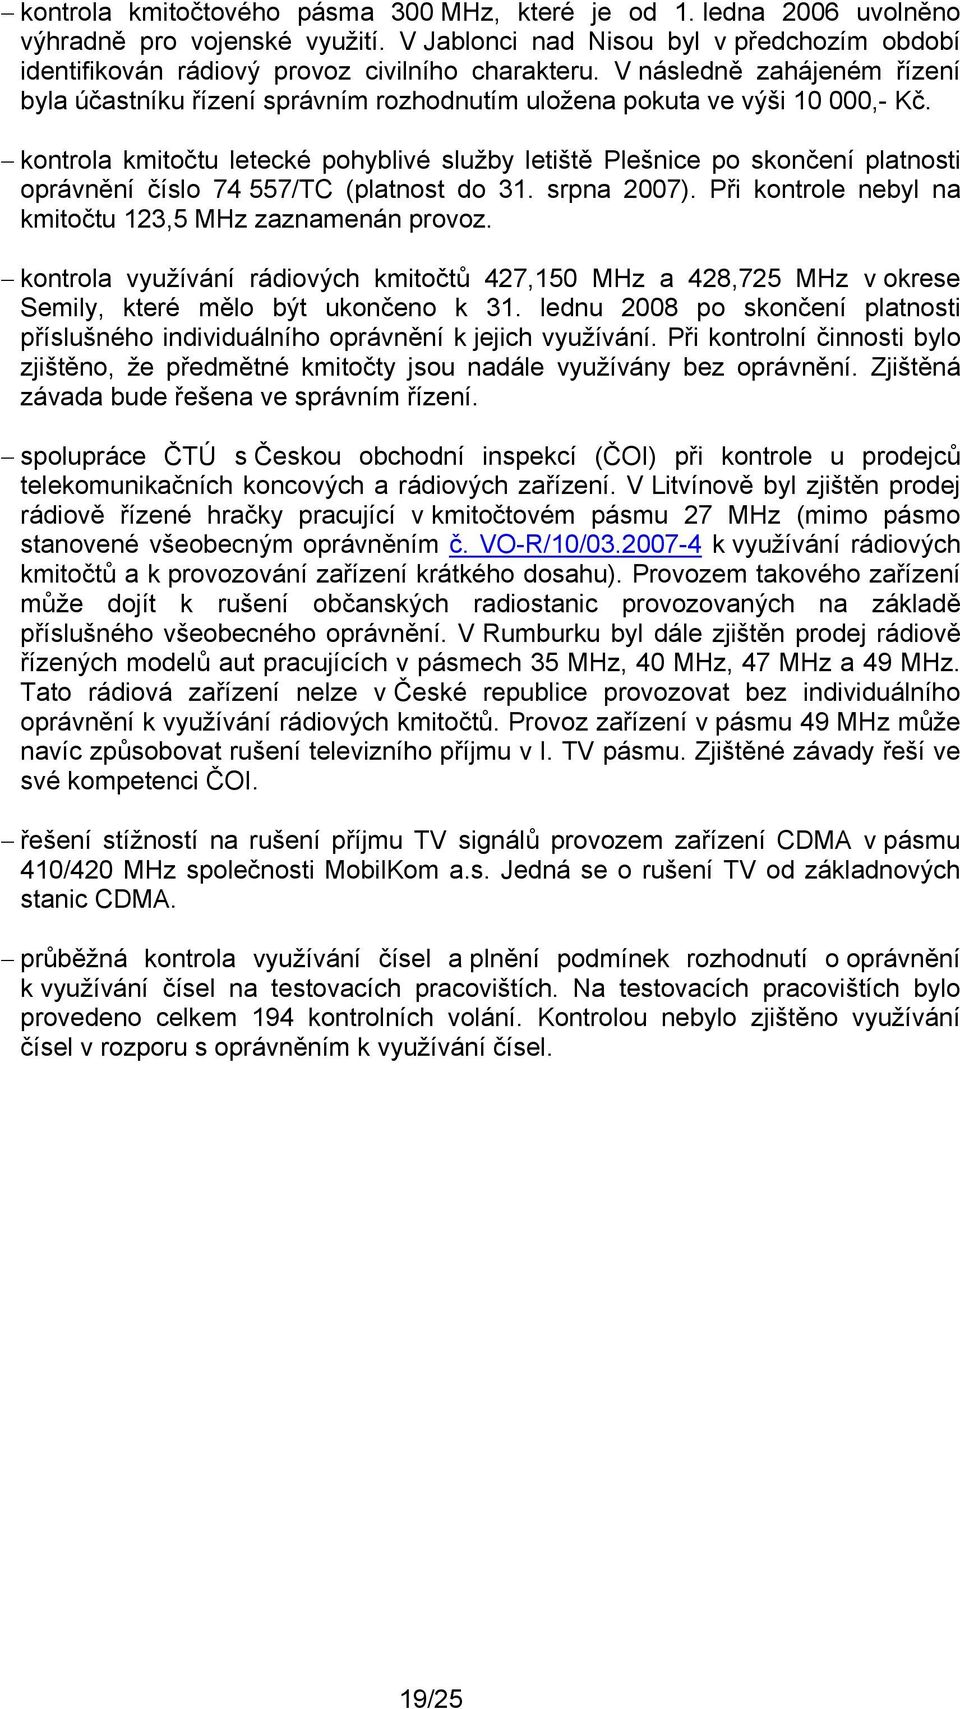 kontrola kmitočtu letecké pohyblivé služby letiště Plešnice po skončení platnosti oprávnění číslo 74 557/TC (platnost do 31. srpna 2007). Při kontrole nebyl na kmitočtu 123,5 MHz zaznamenán provoz.